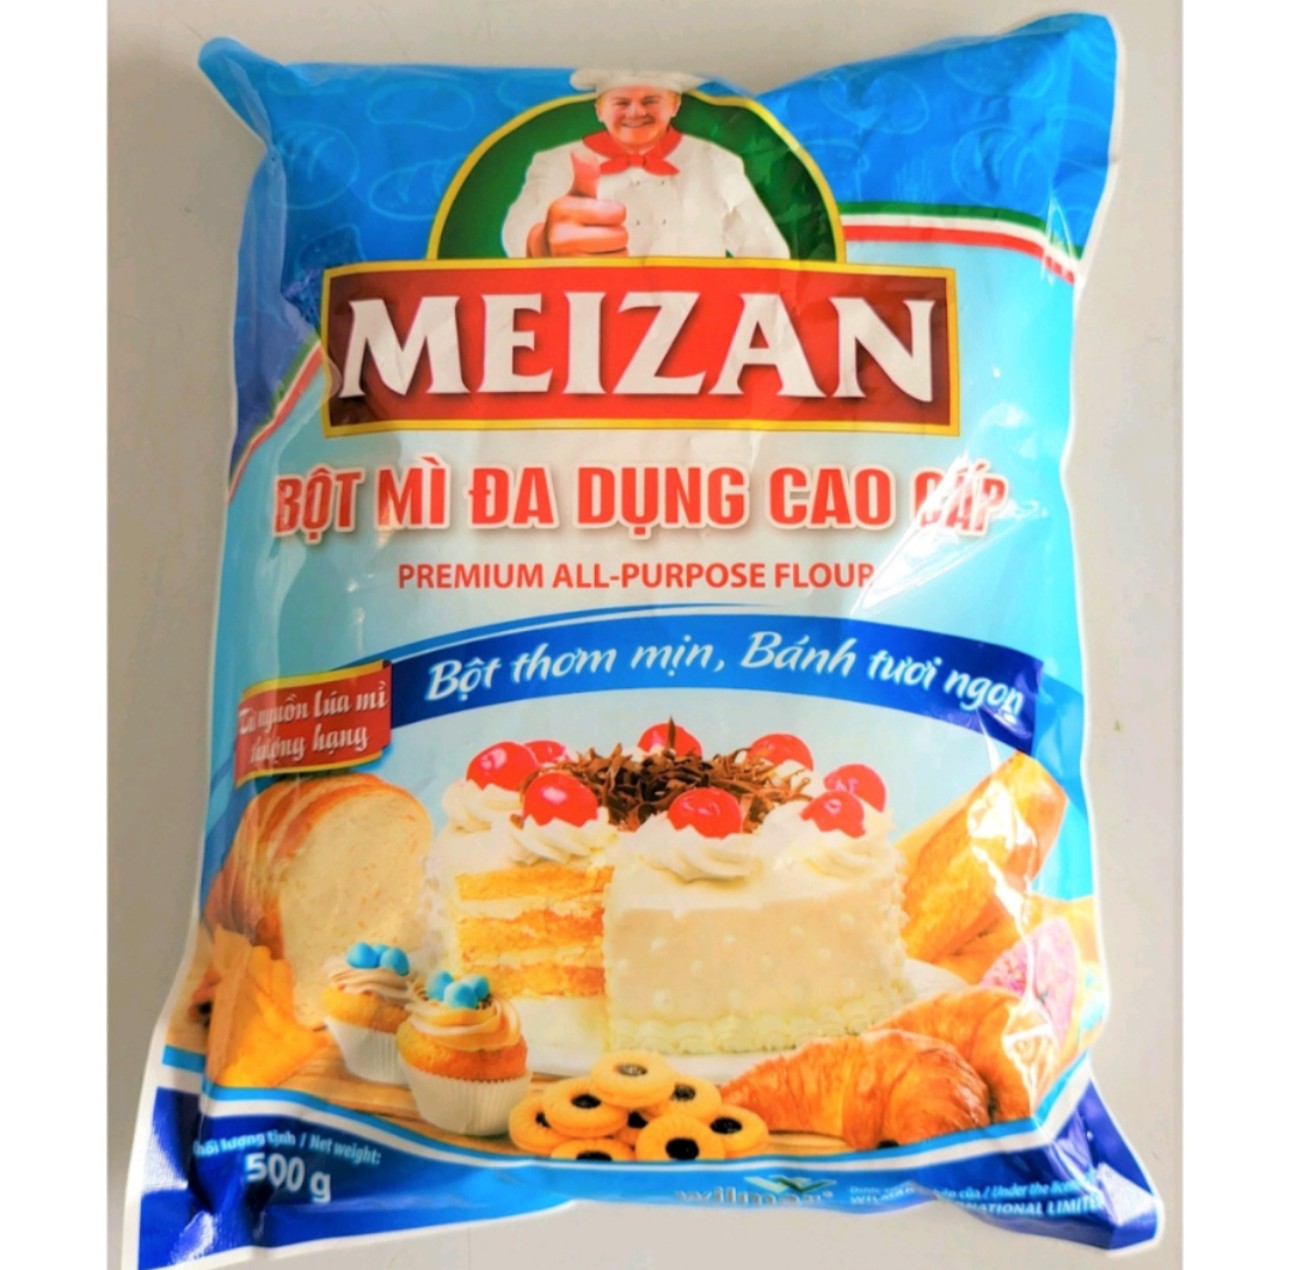 bột mì đa dụng cao cấp Mezan gói 500g